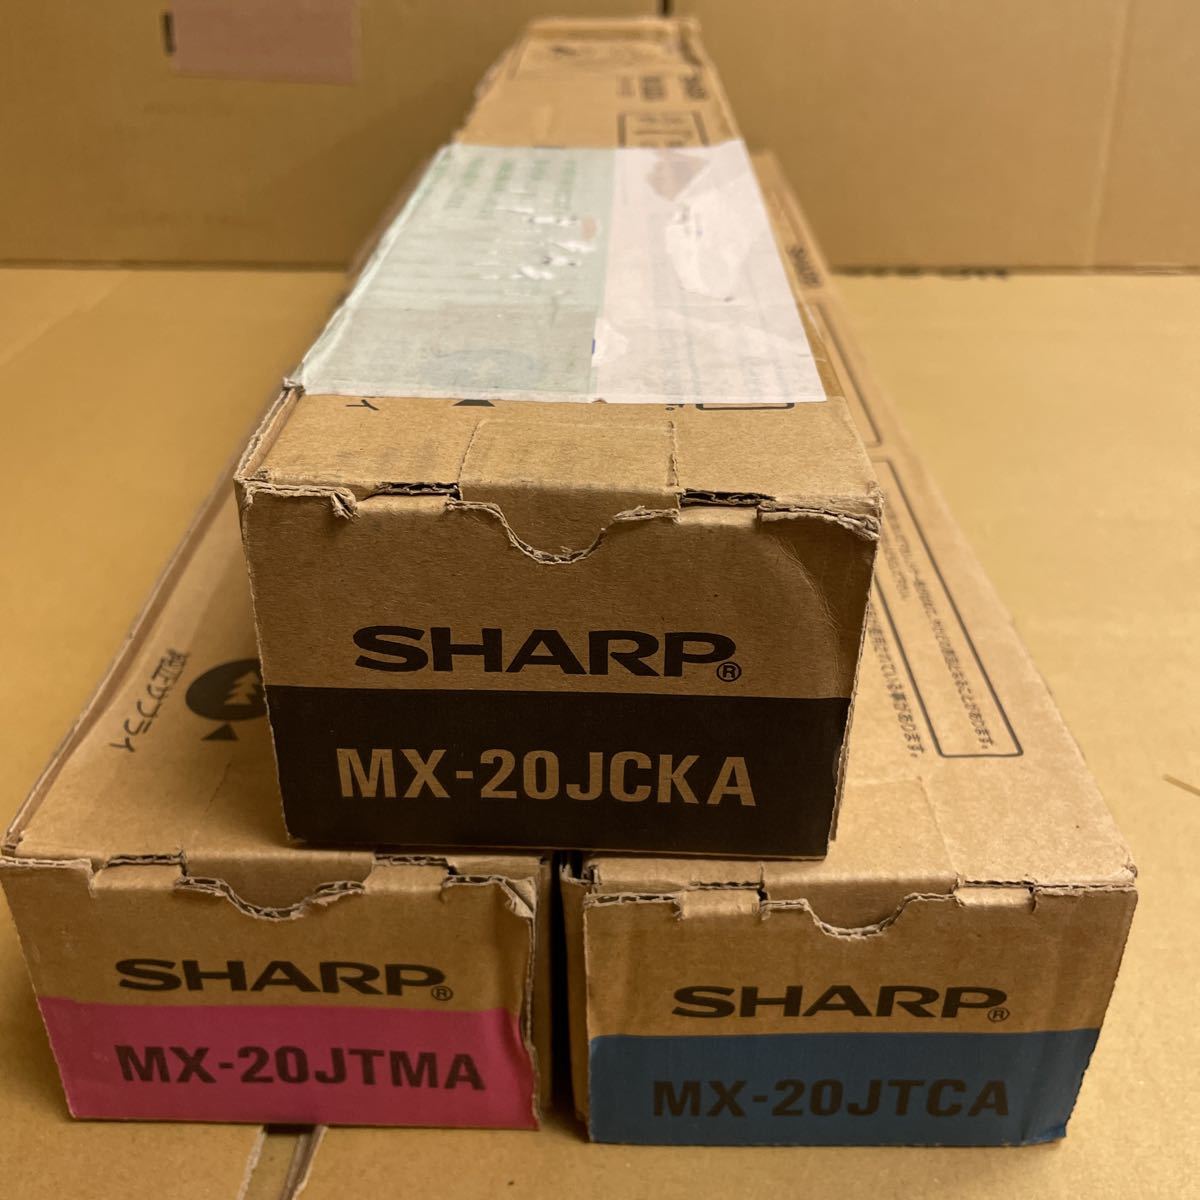 SHARP シャープ トナー トナーカートリッジ MX-20JCKA MX-20JTMA MX-20JTCA 純正品 送料無料